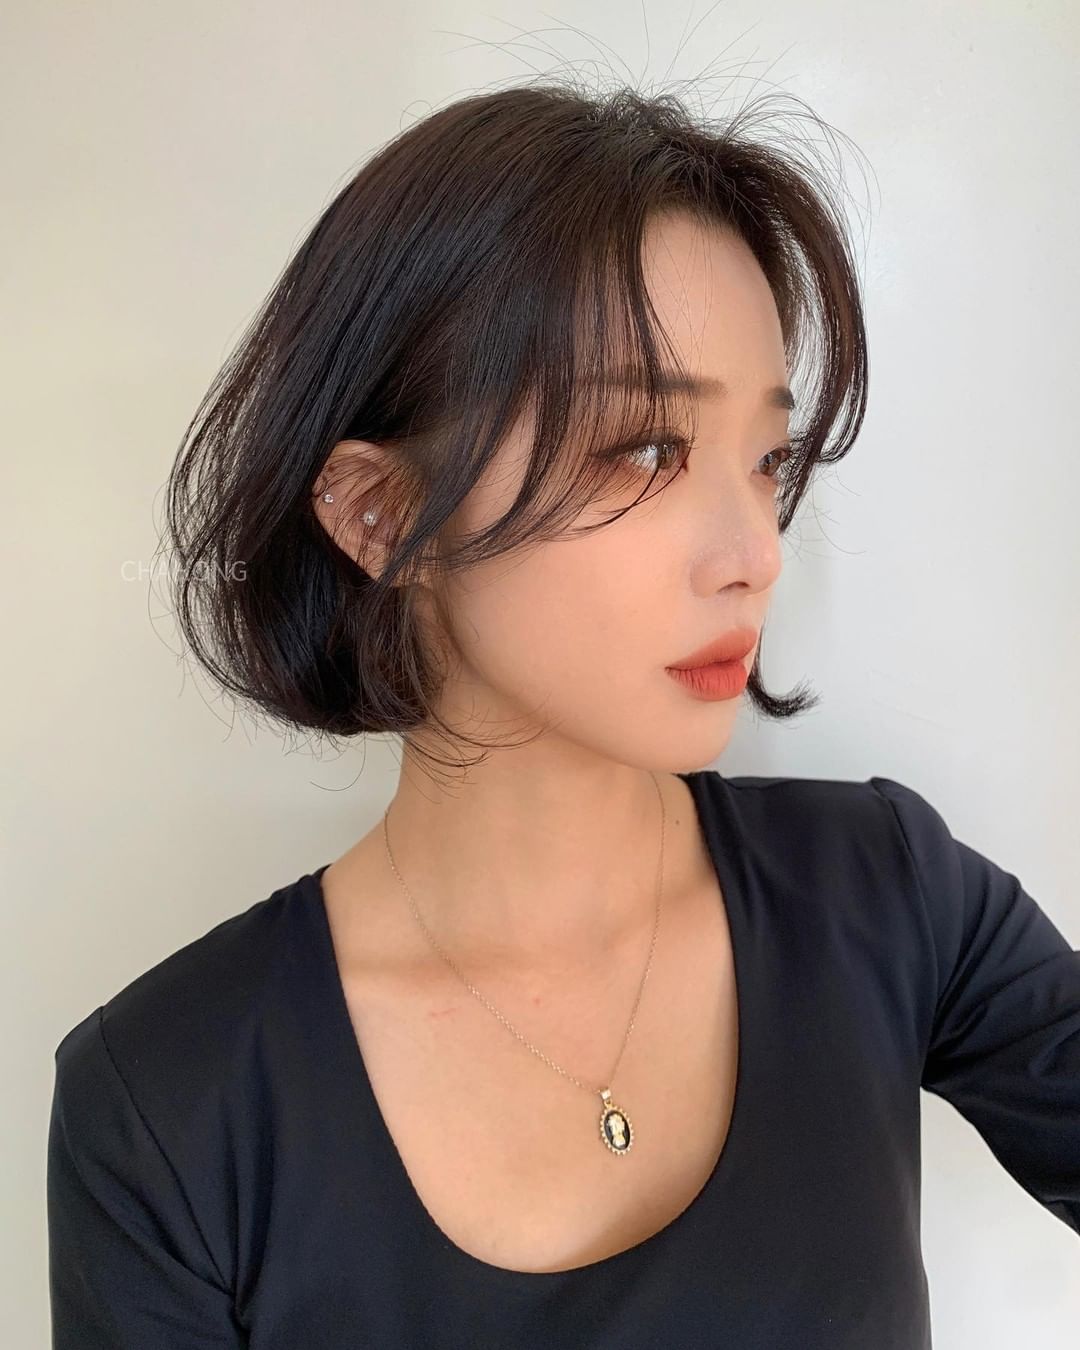 Stylist Hàn hé lộ 6 kiểu tóc ngắn cực sang mặt để các nàng tân trang nhan  sắc trong 2 tháng cuối năm 2020